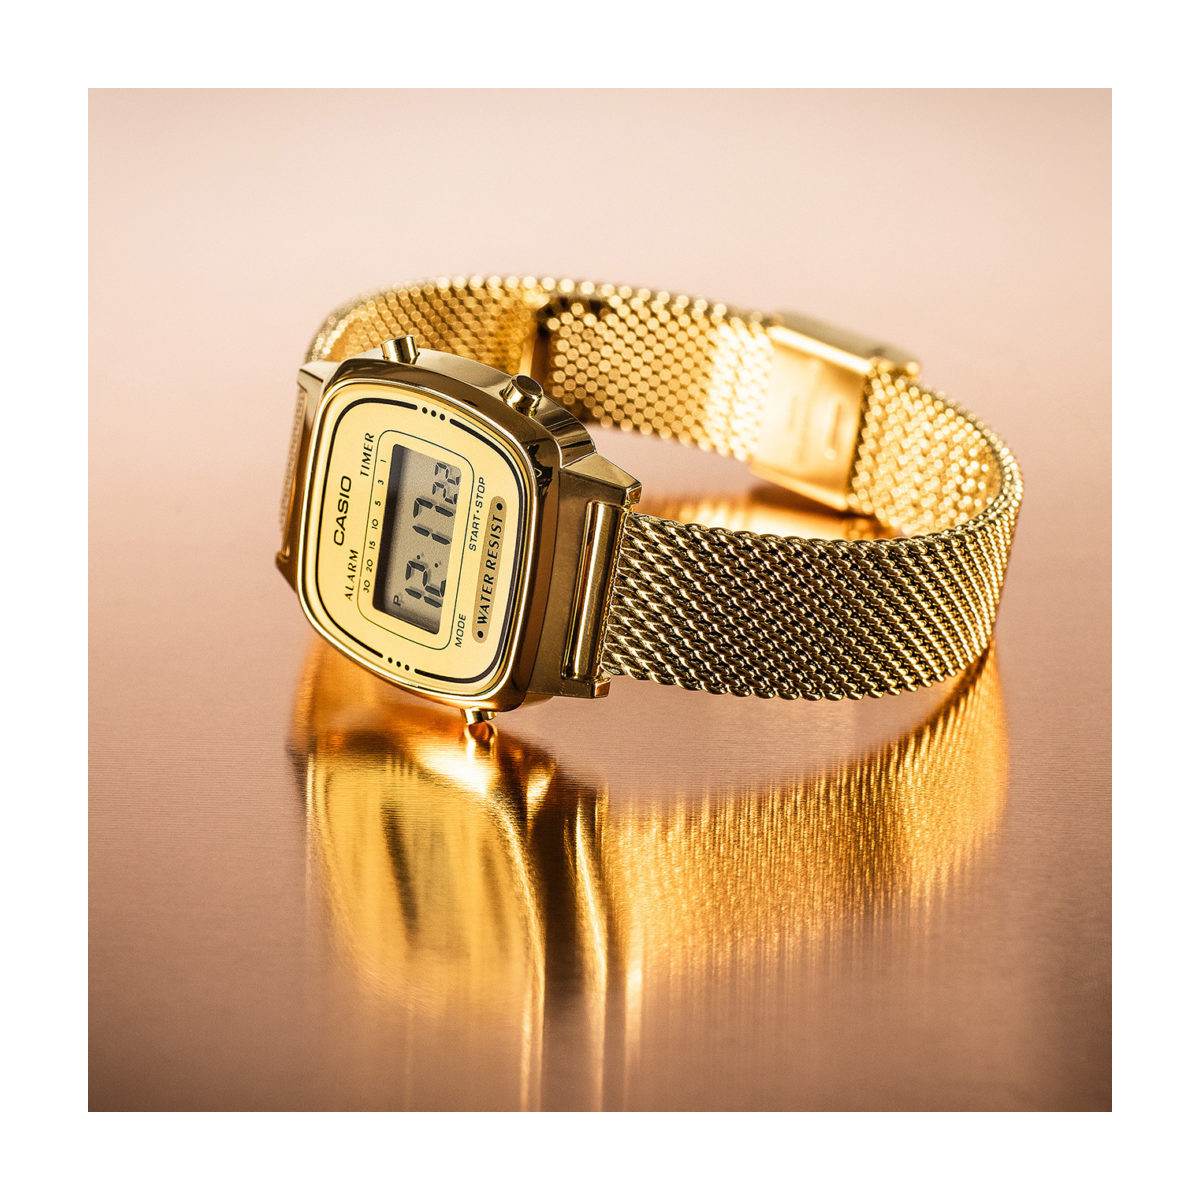 Reloj casio digital pequeño con esterilla en acero chapado dorado